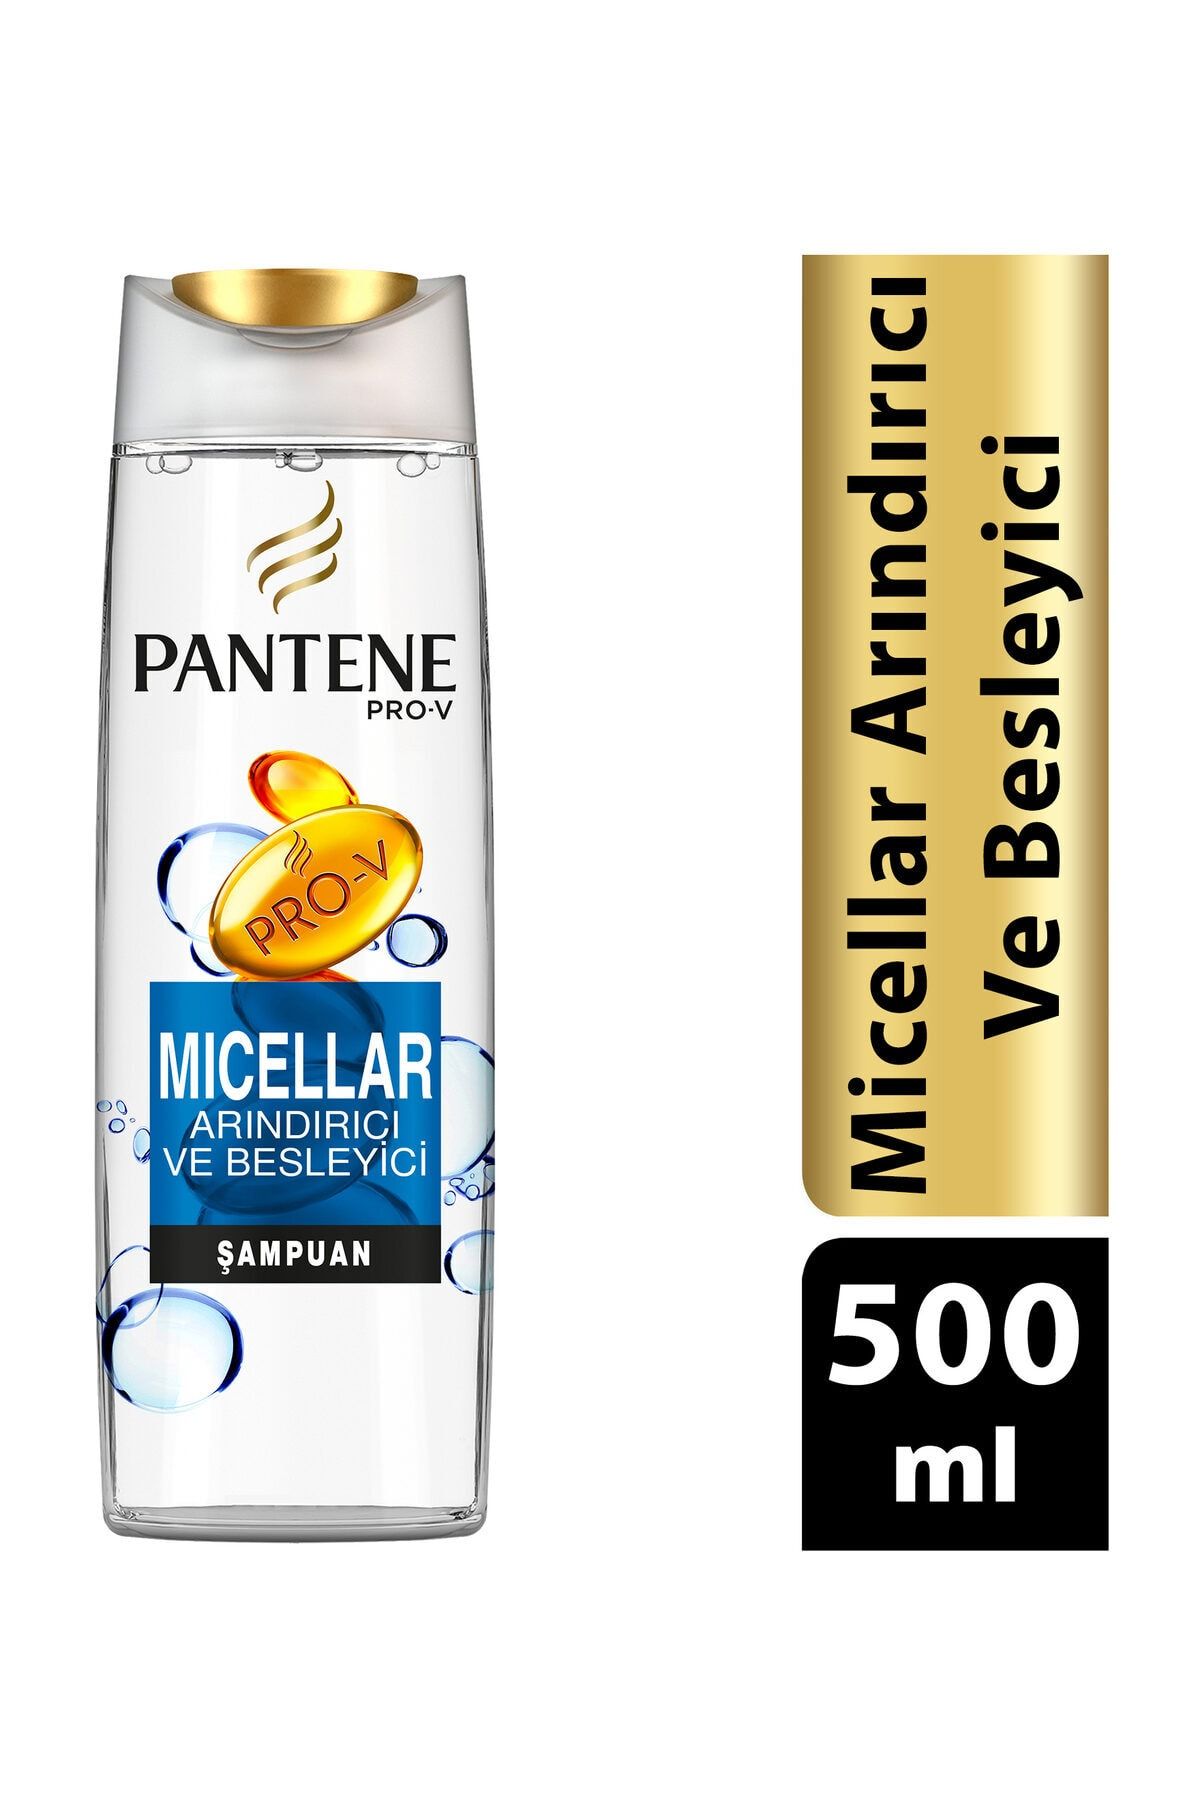 Pantene Şampuan Micellar Arındırıcı Besleyici 500 ml